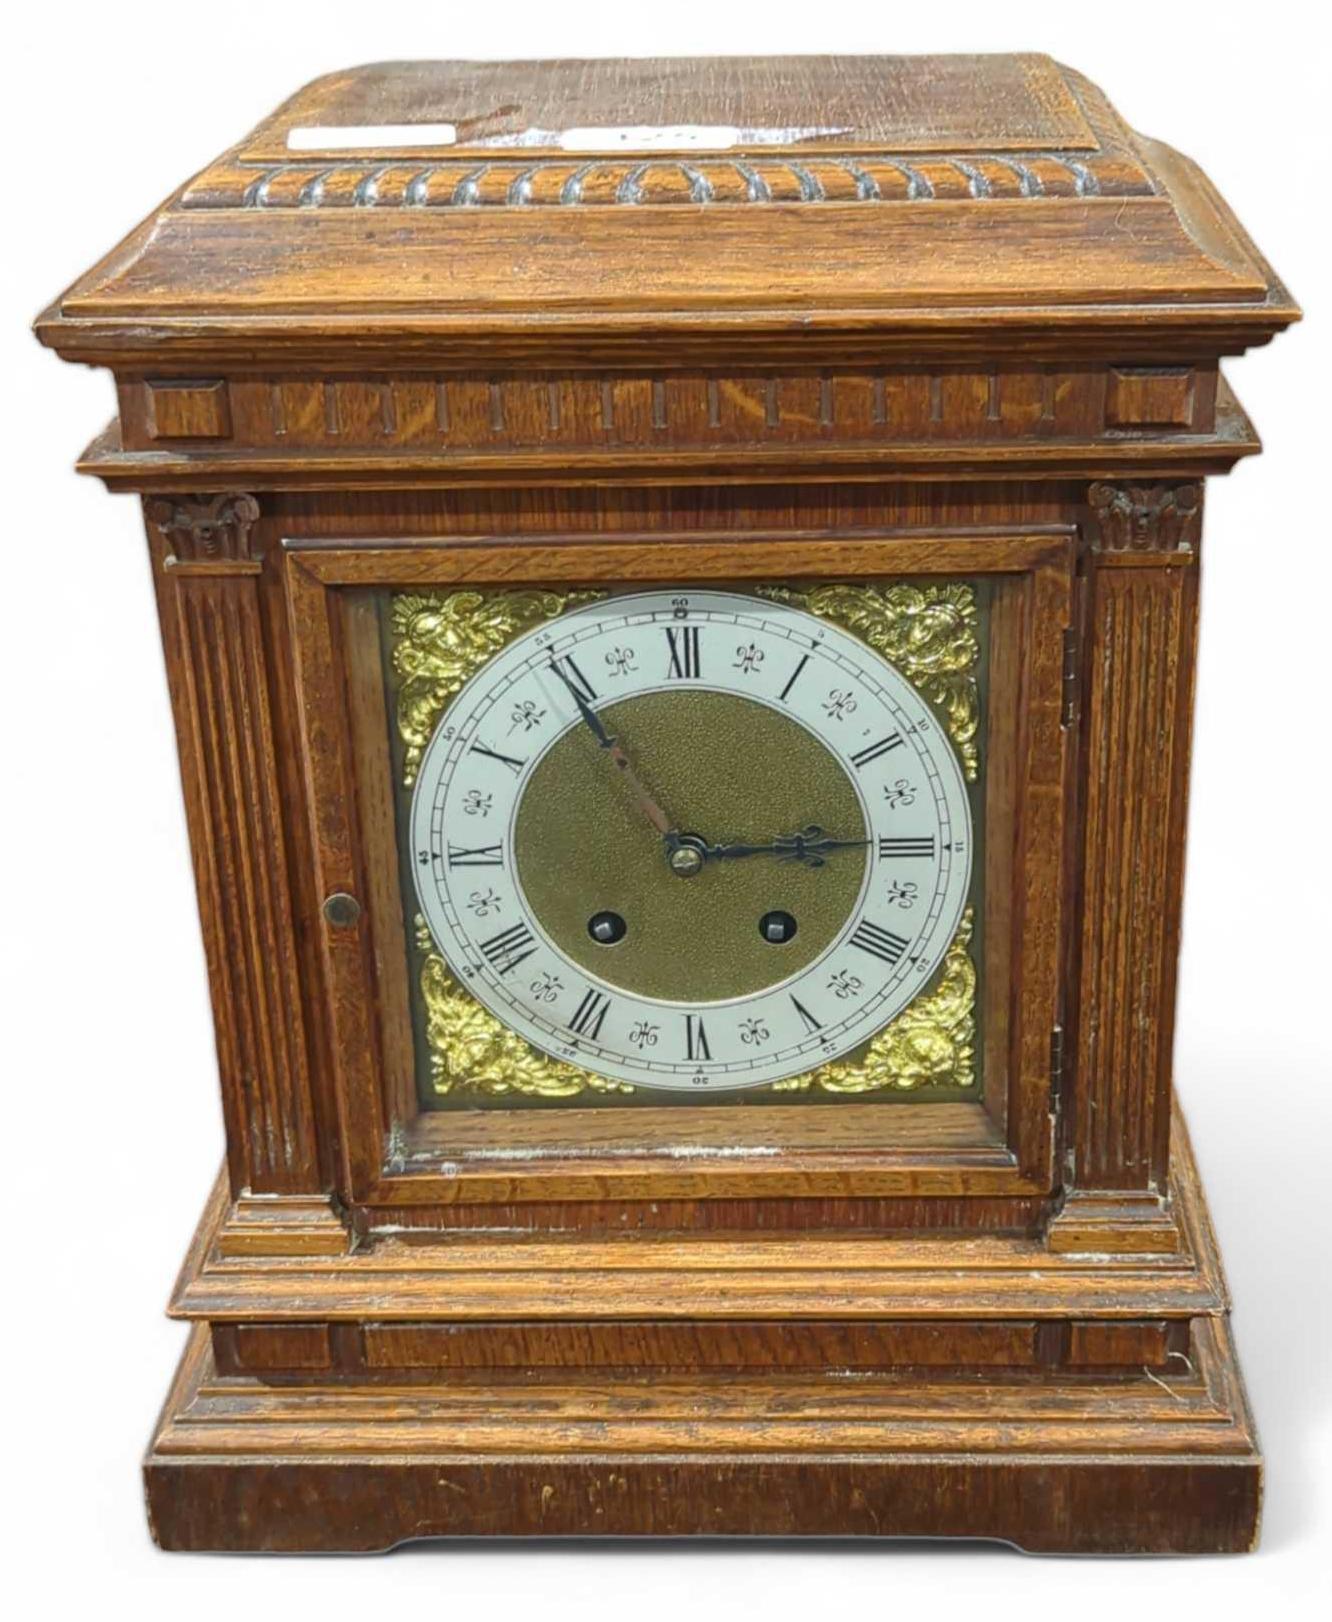 An Edwardian oak cased mantel clock striking on a